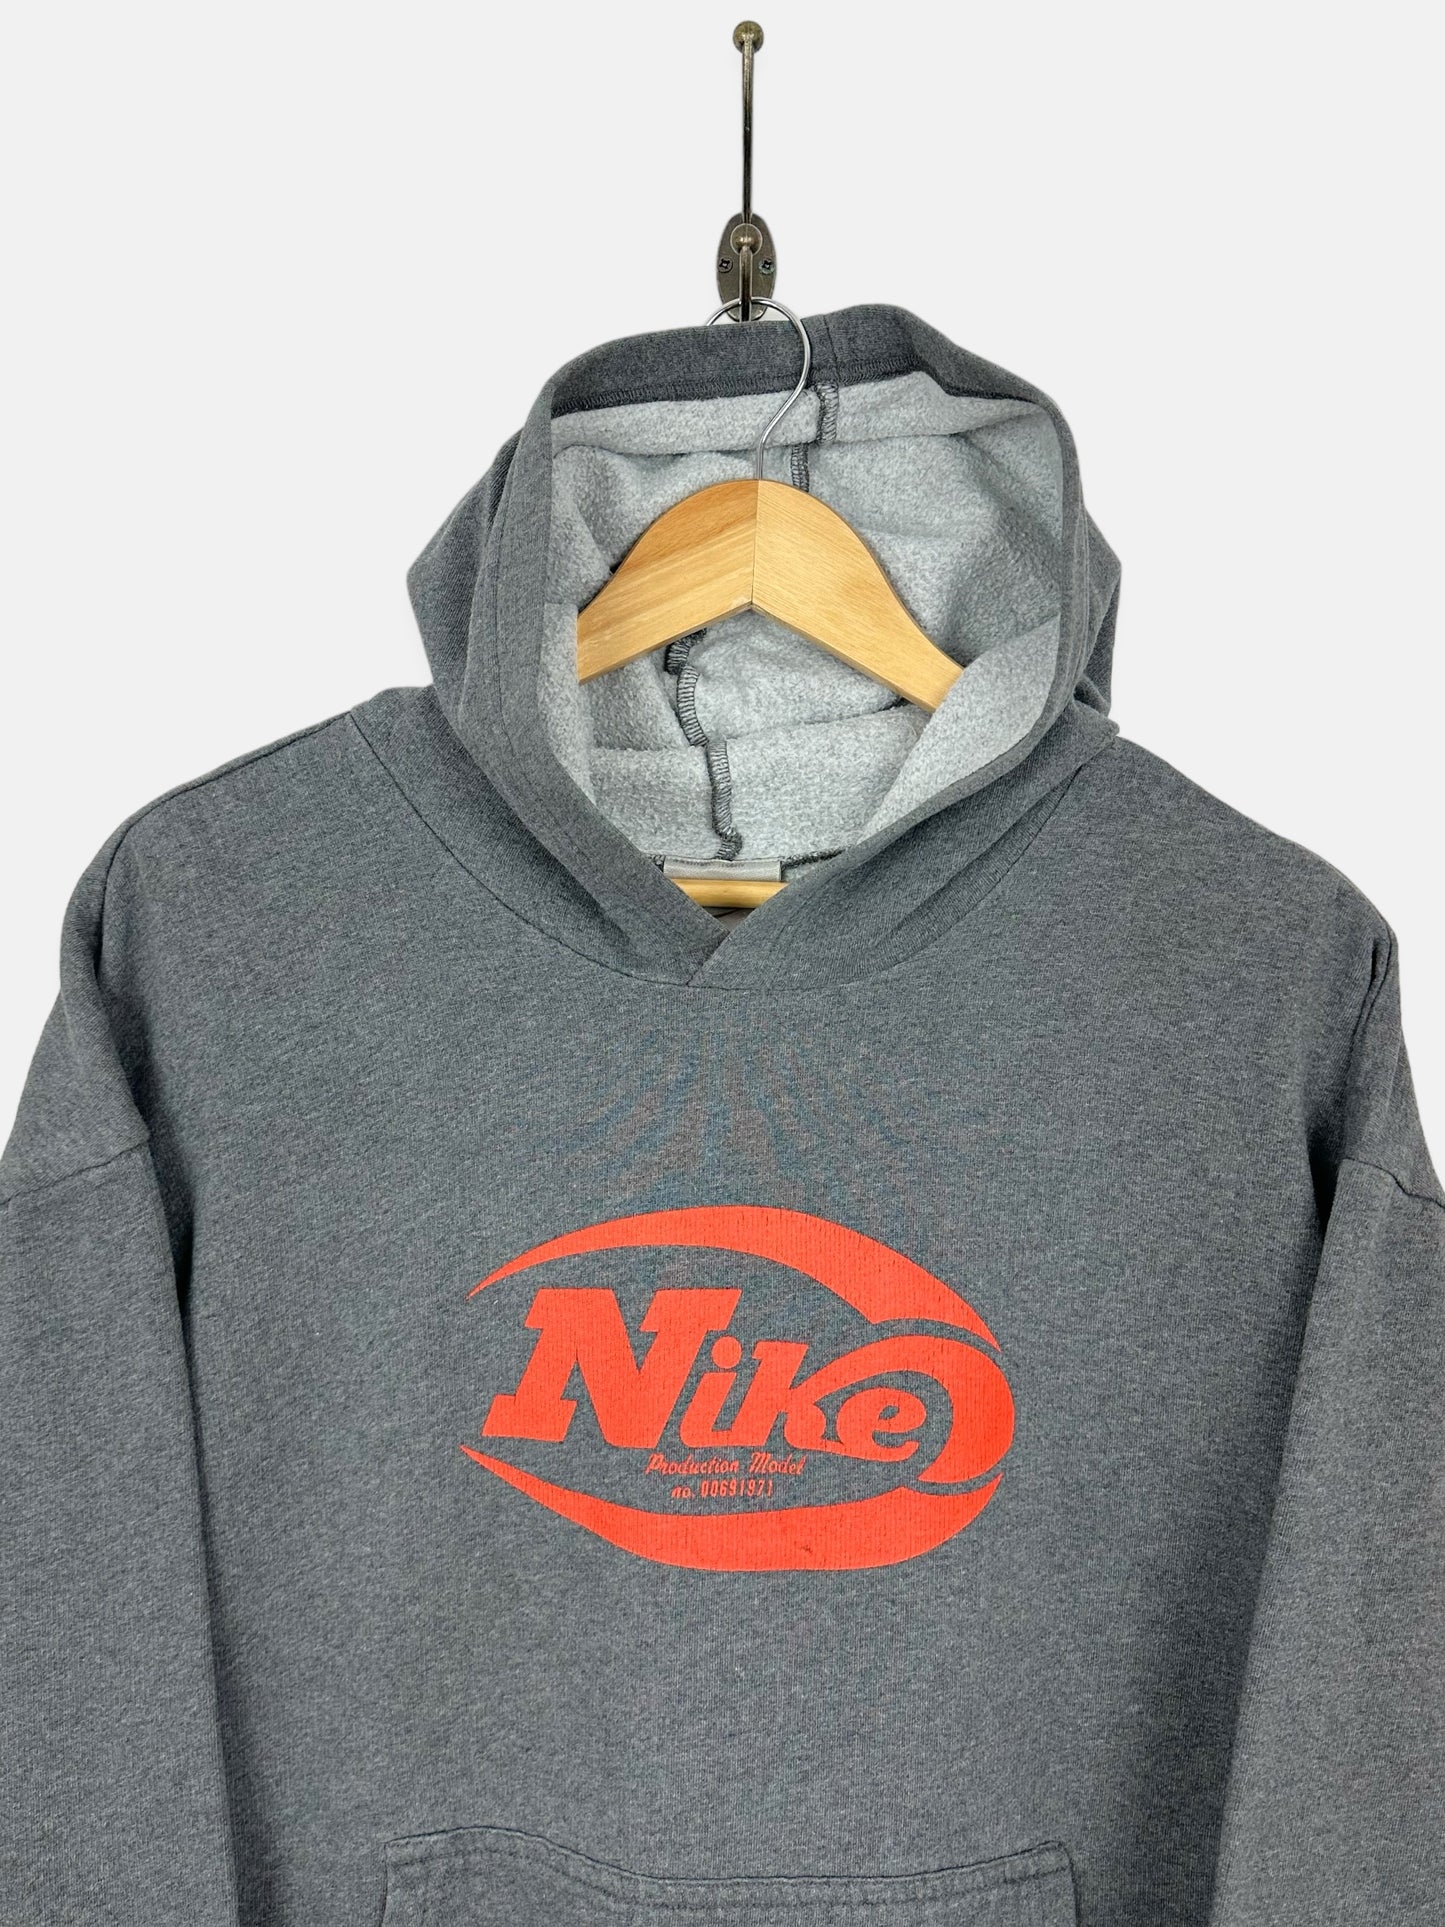 90's Nike Vintage Hoodie Size M-L